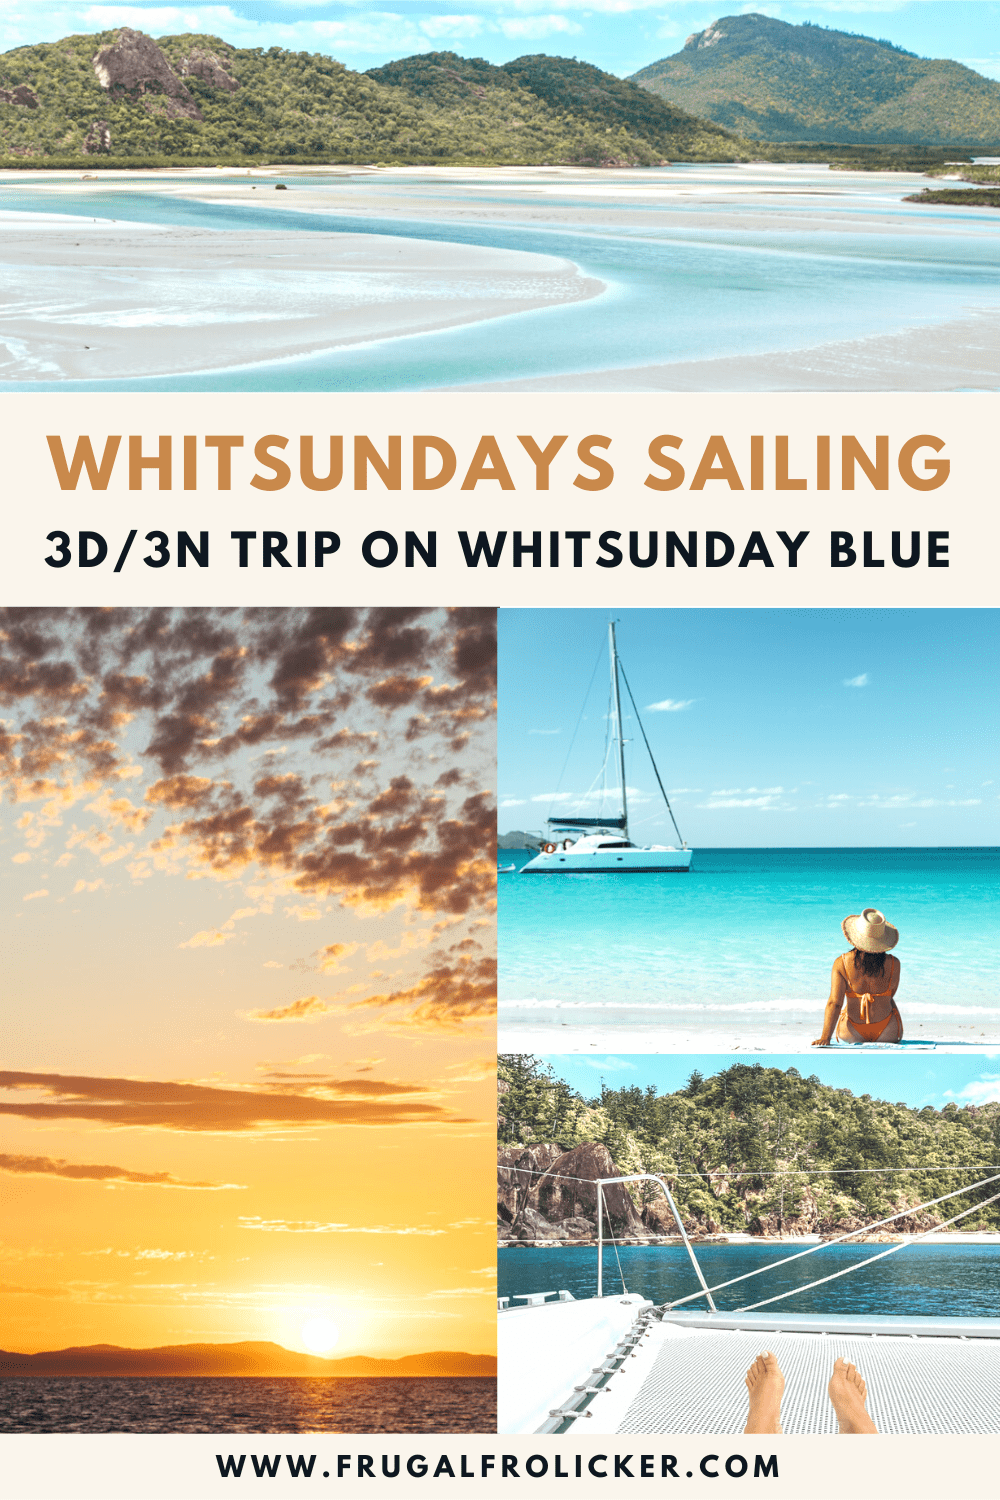 Whitsundays Sailing Trip on Whitsunday Blue